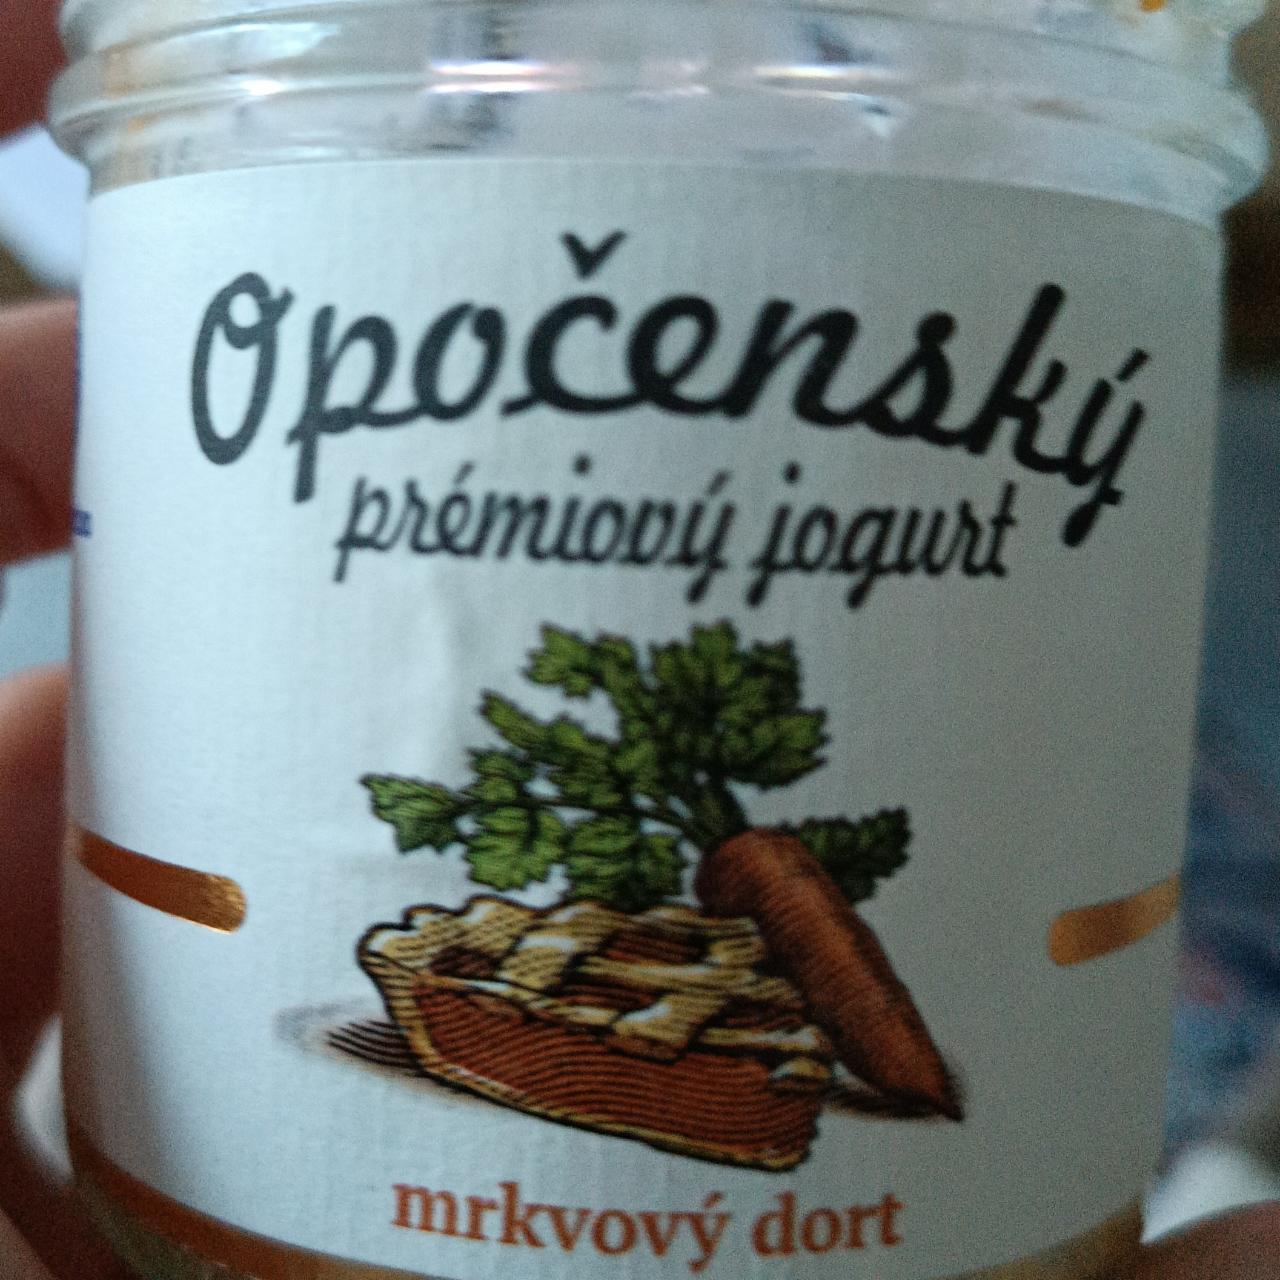 Fotografie - Opočenský prémiový jogurt mrkvový dort